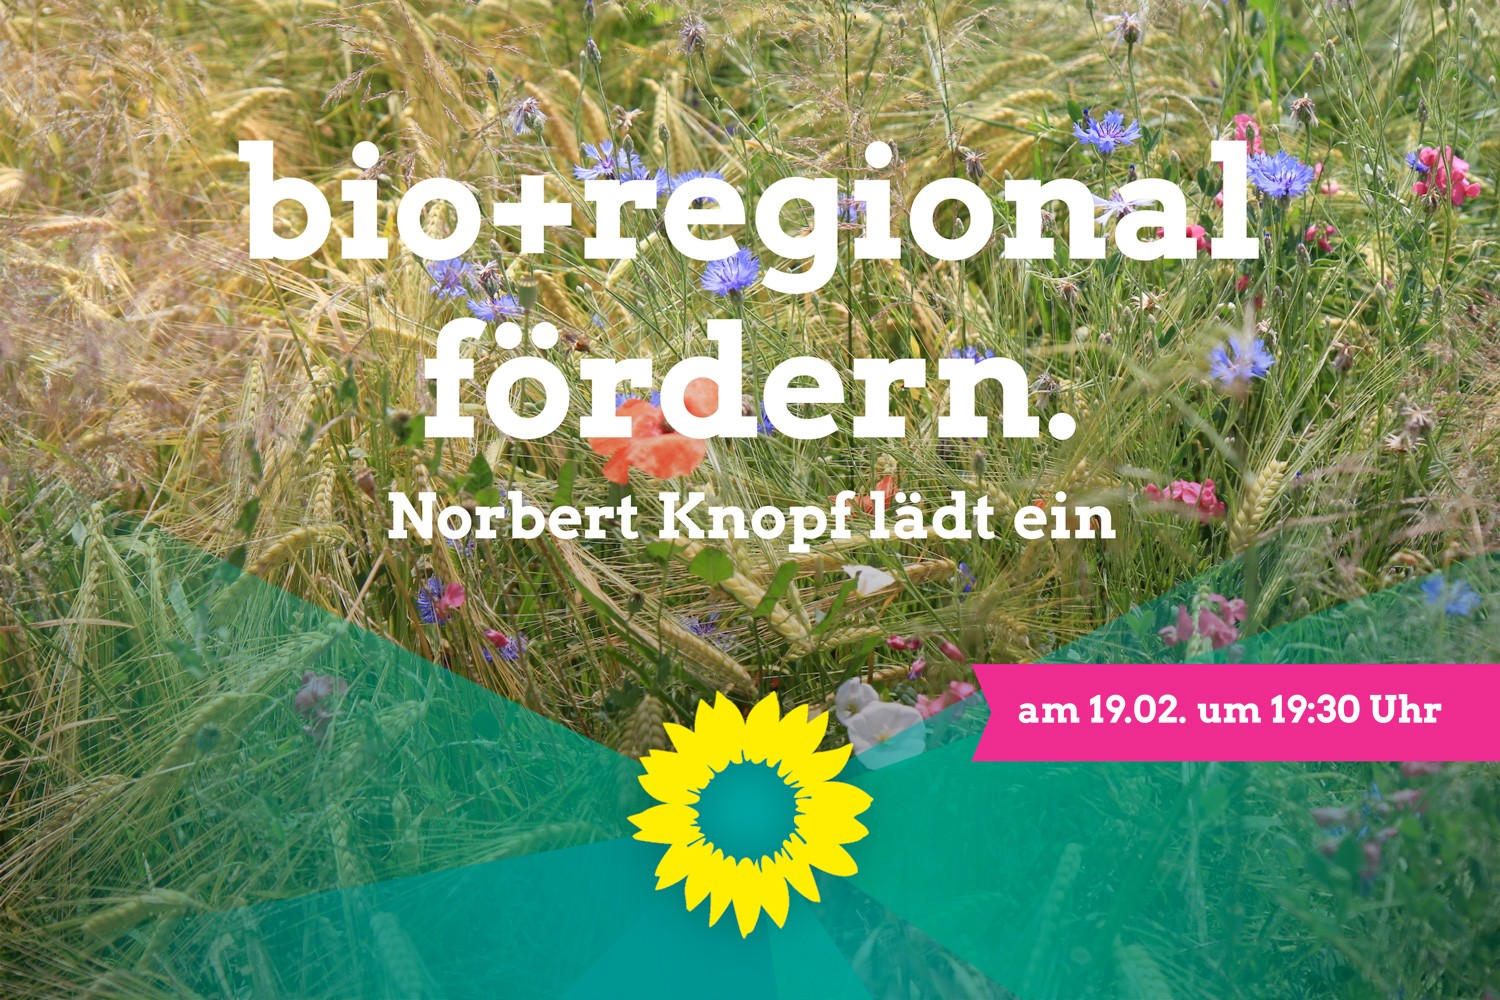 Markt für regionale Bioprodukte stärken